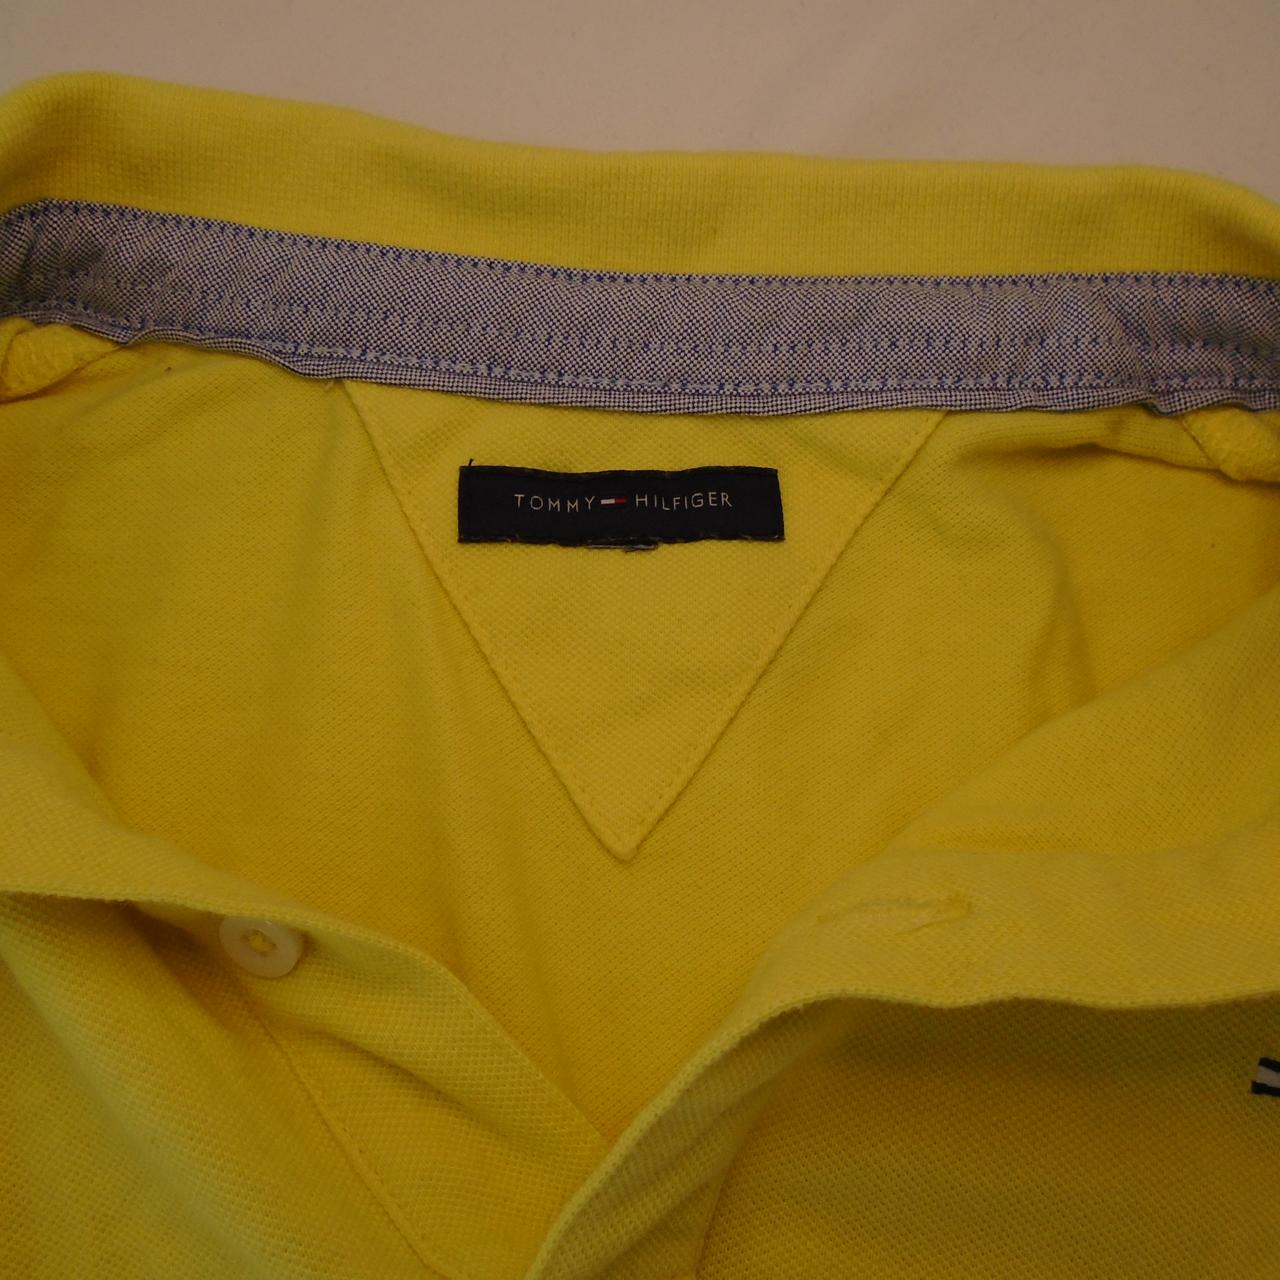 Damen-Poloshirt von Tommy Hilfiger. Gelb. M. Gebraucht. Gut